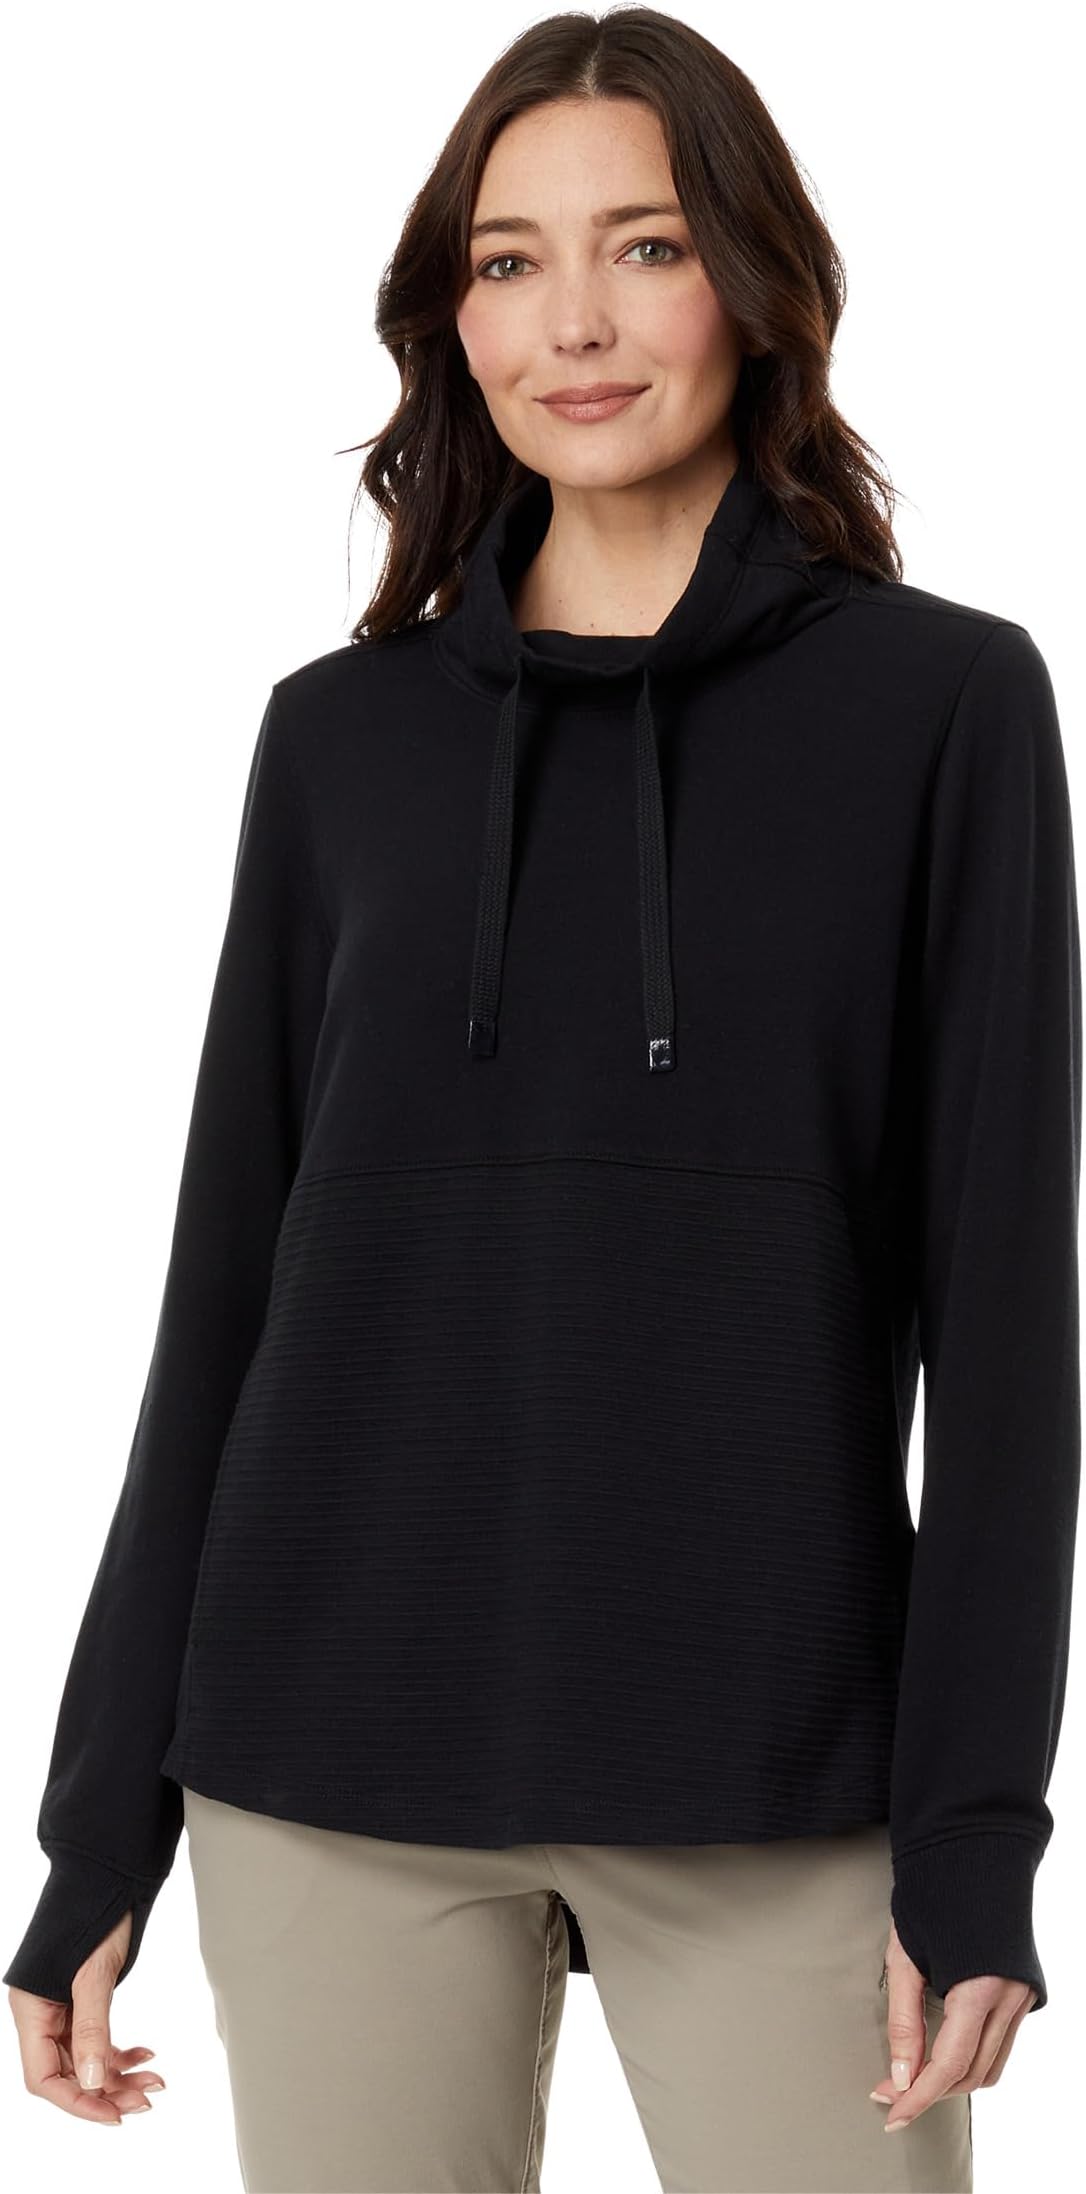 Миниатюрный уютный пуловер смешанной вязки L.L.Bean, цвет Midnight Black